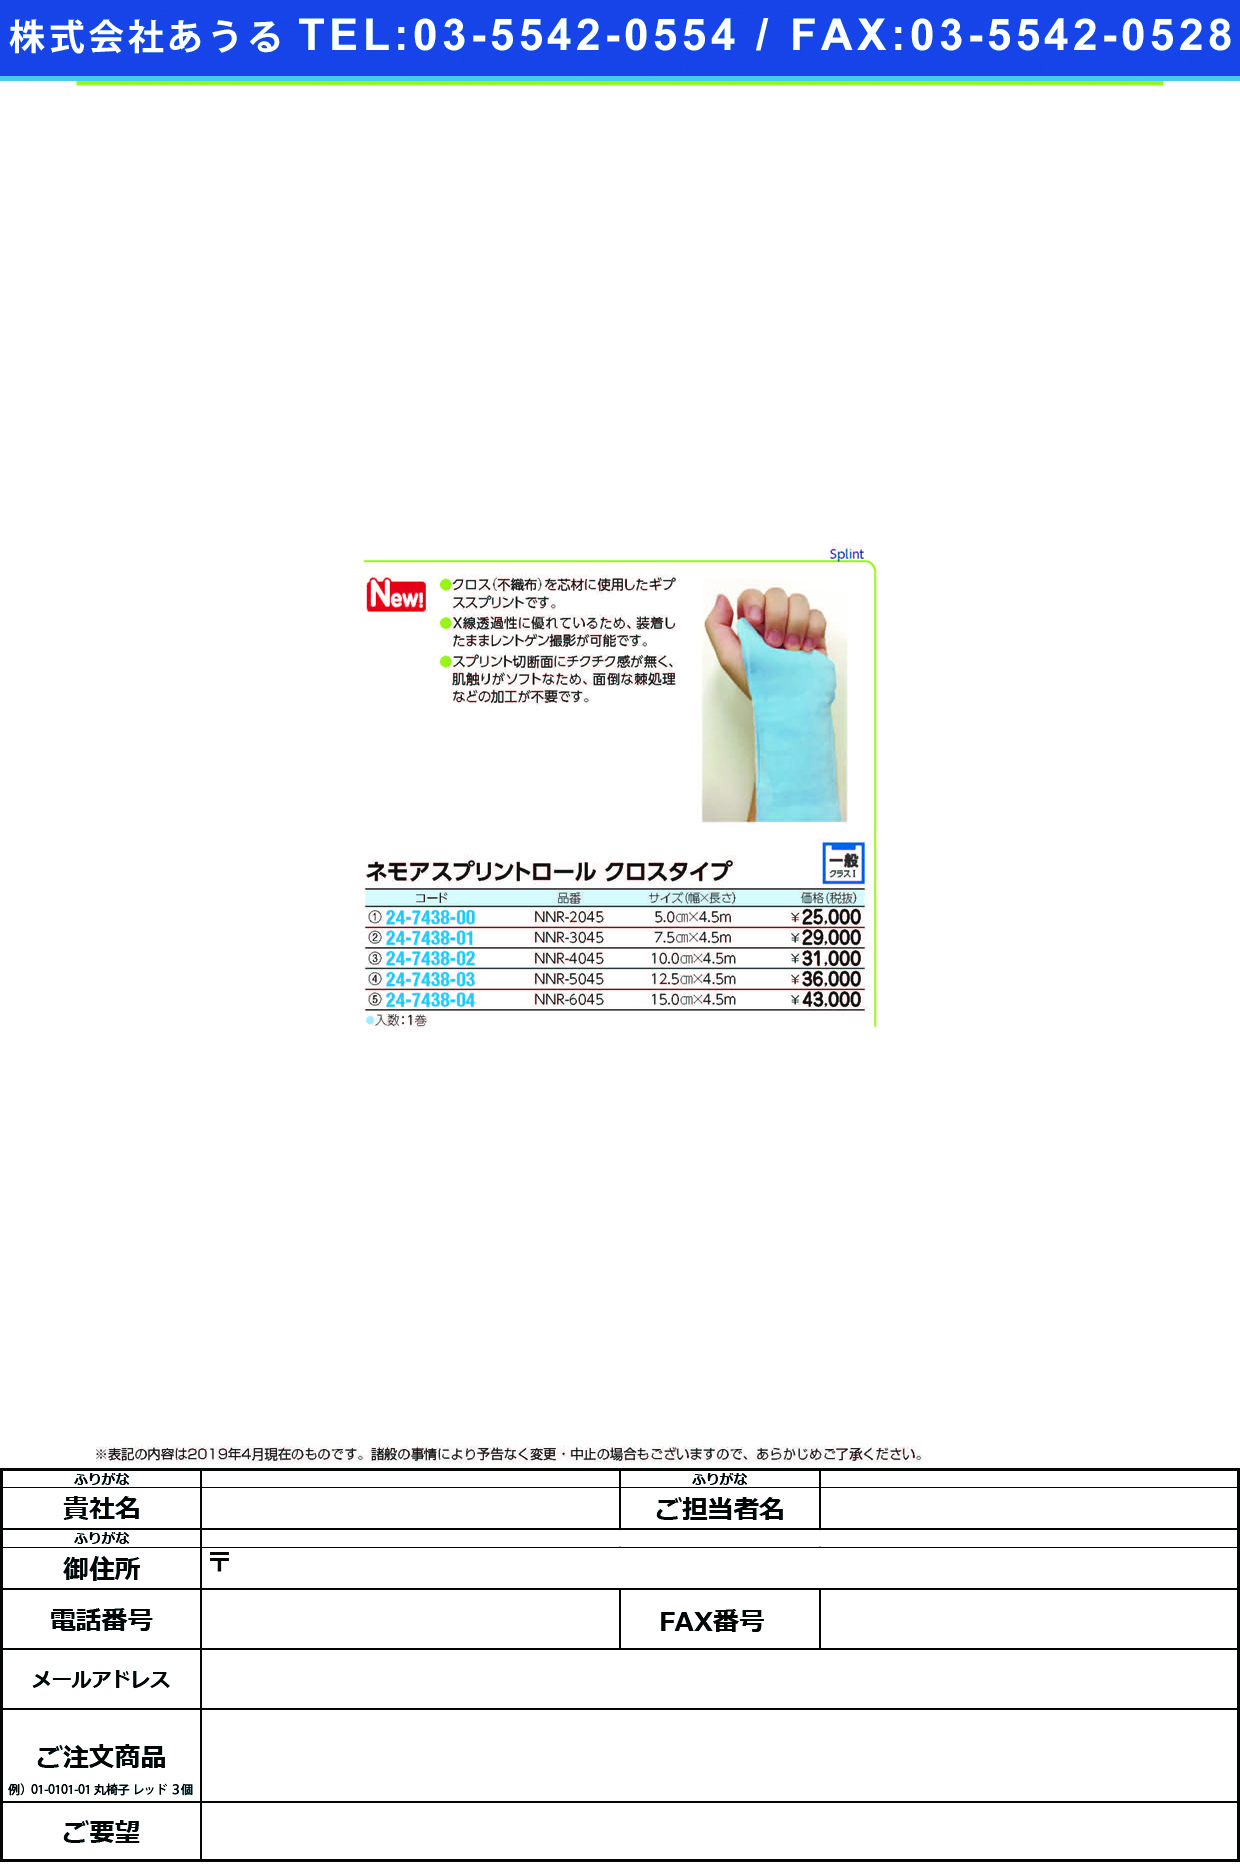 (24-7438-01)ネモアスプリントロール　クロスタイプNNR-3045(7.5X450CM) ﾈﾓｱｽﾌﾟﾘﾝﾄﾛｰﾙｳﾛｽﾀｲﾌﾟ(日本ハイテック)【1箱単位】【2019年カタログ商品】